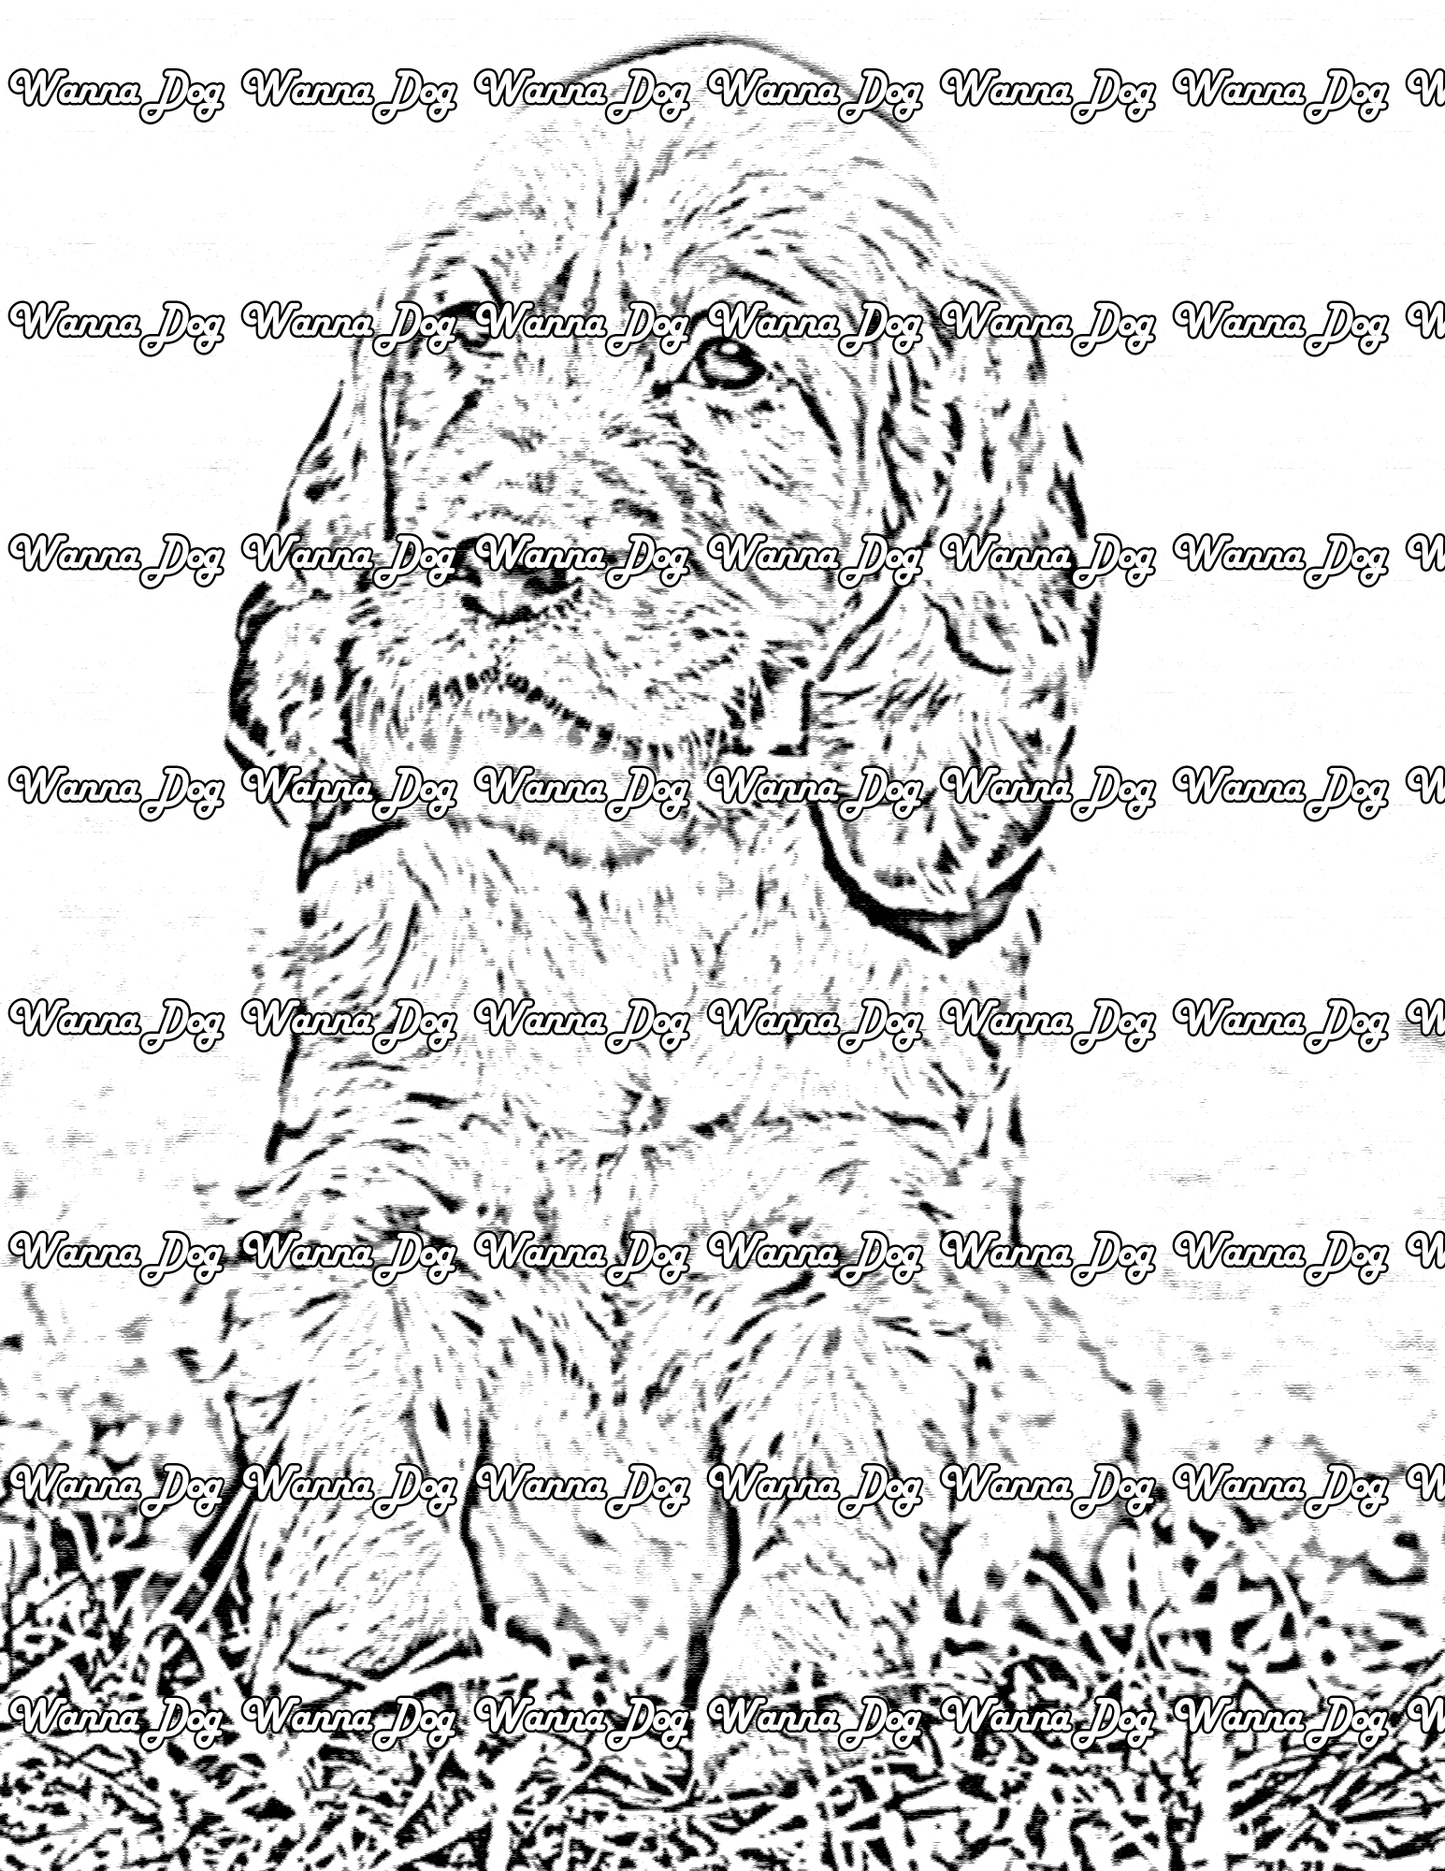 Irish Setter Coloring Page of a Irish Setter puppy sitting